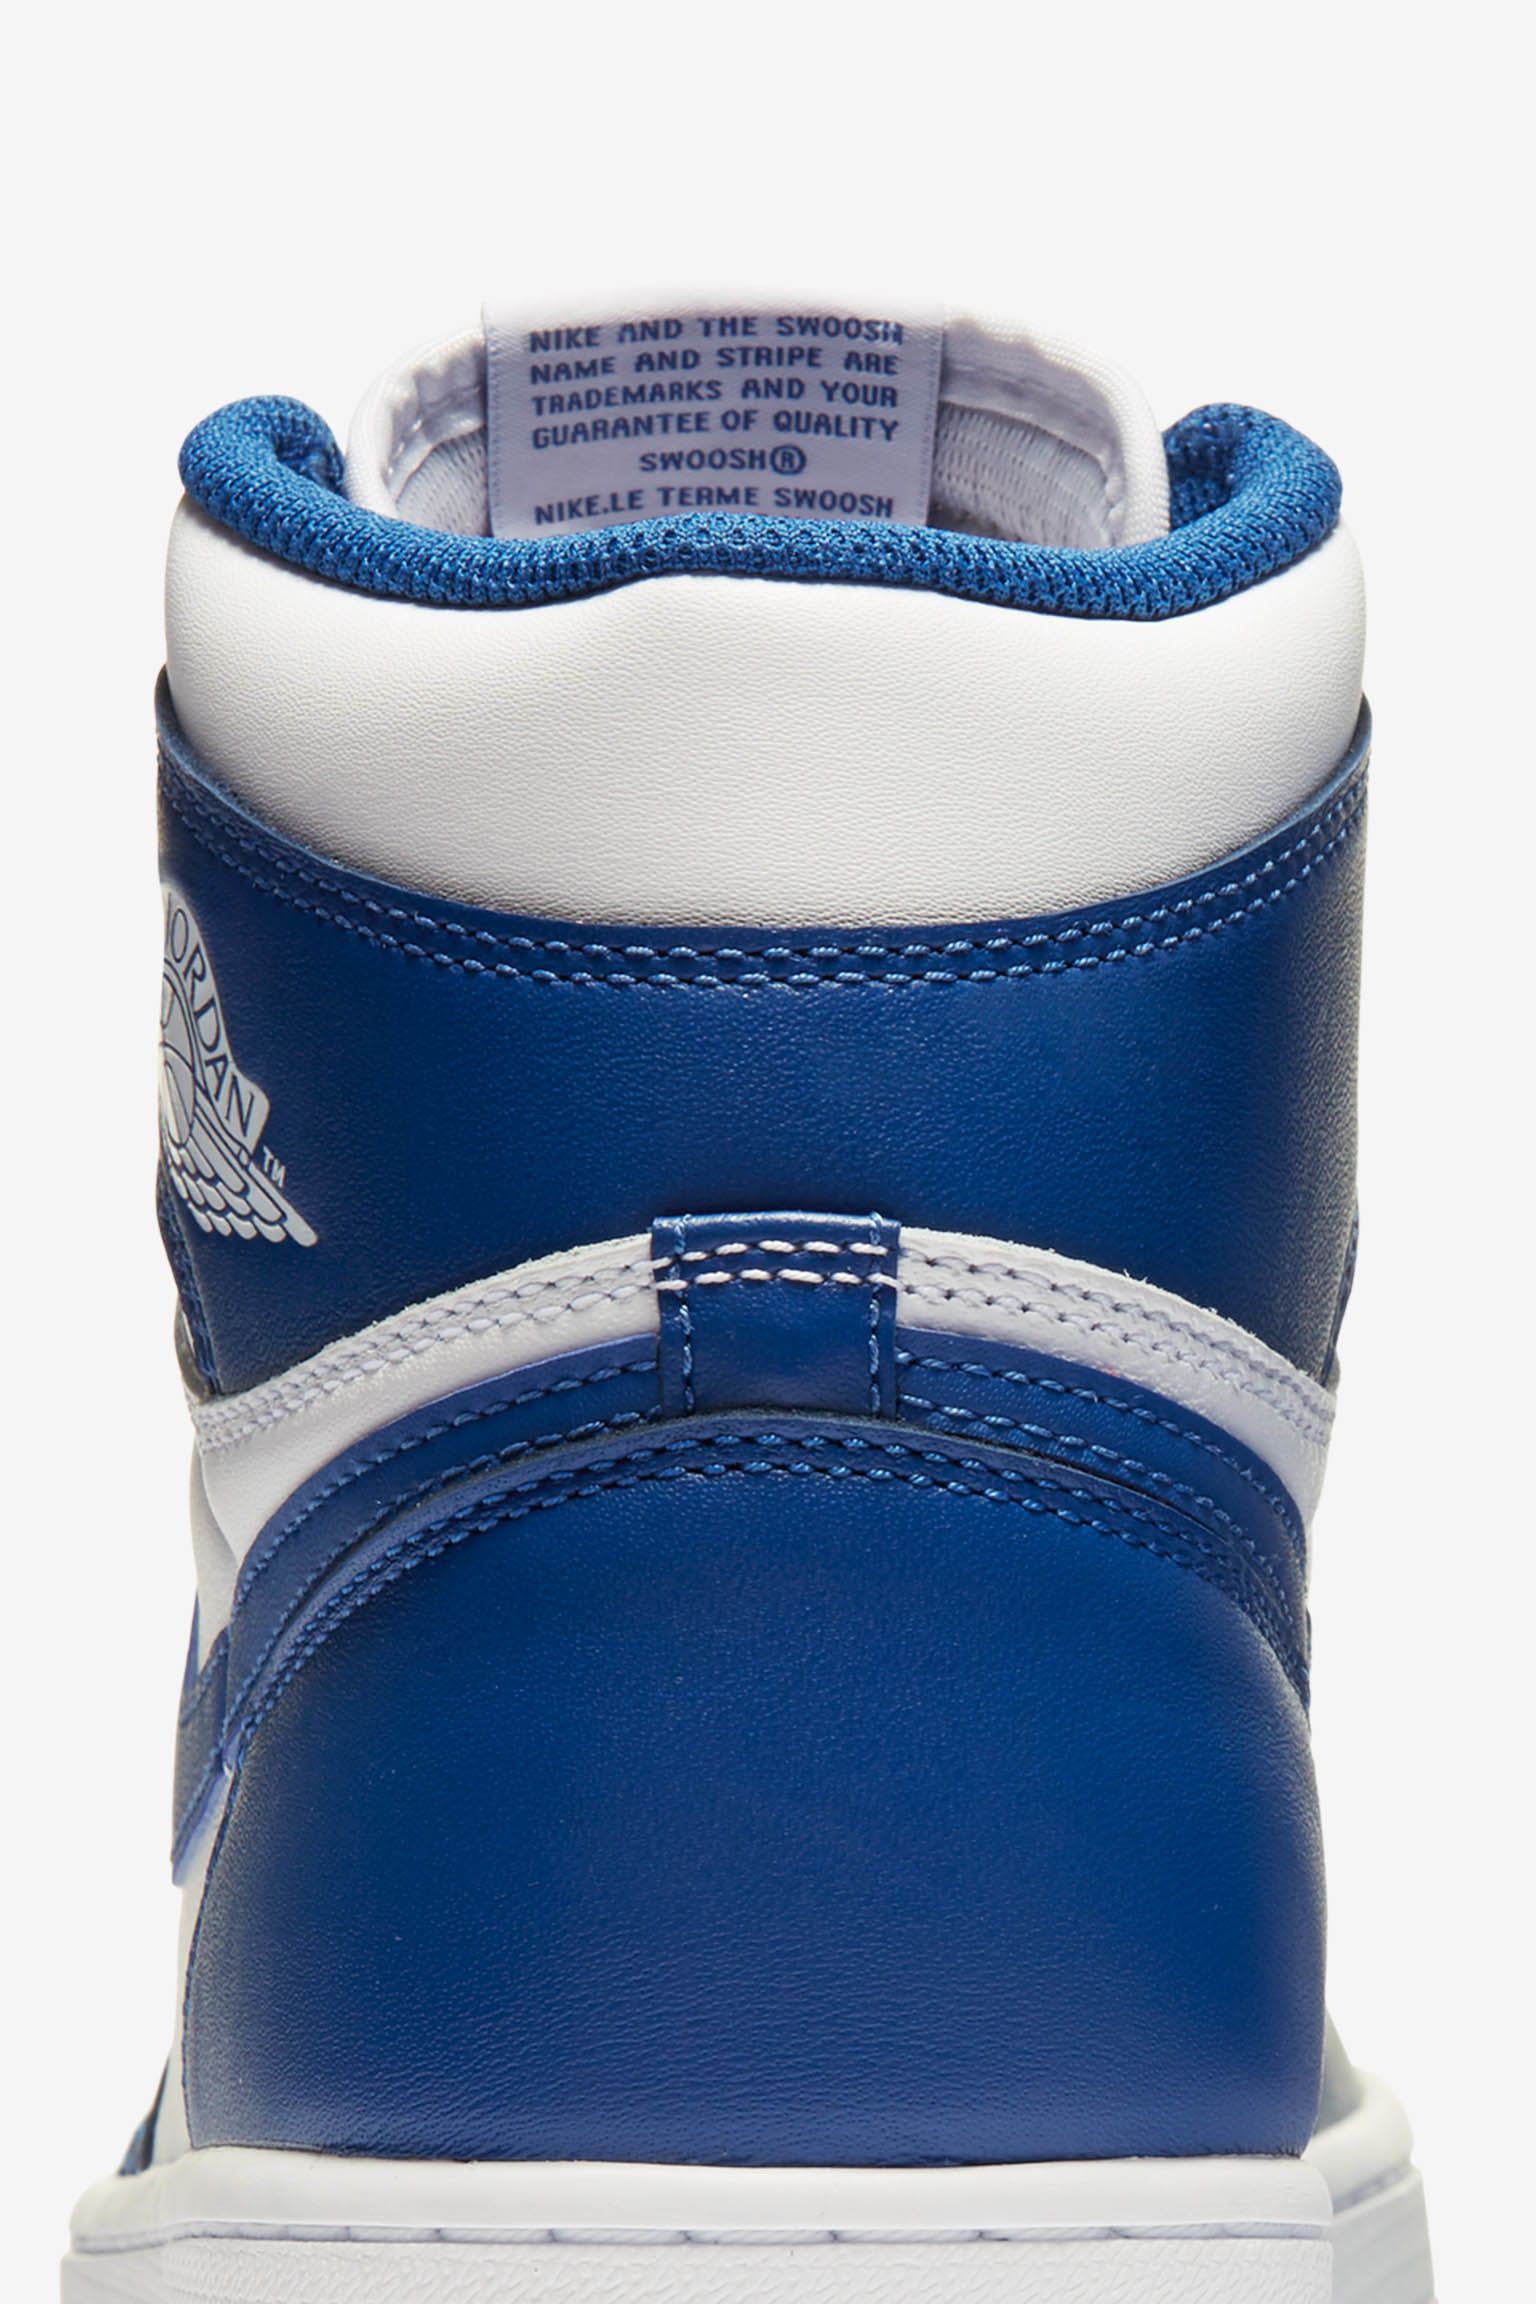 Jordan 1 Retro 'Storm Blue'. Nike SNKRS